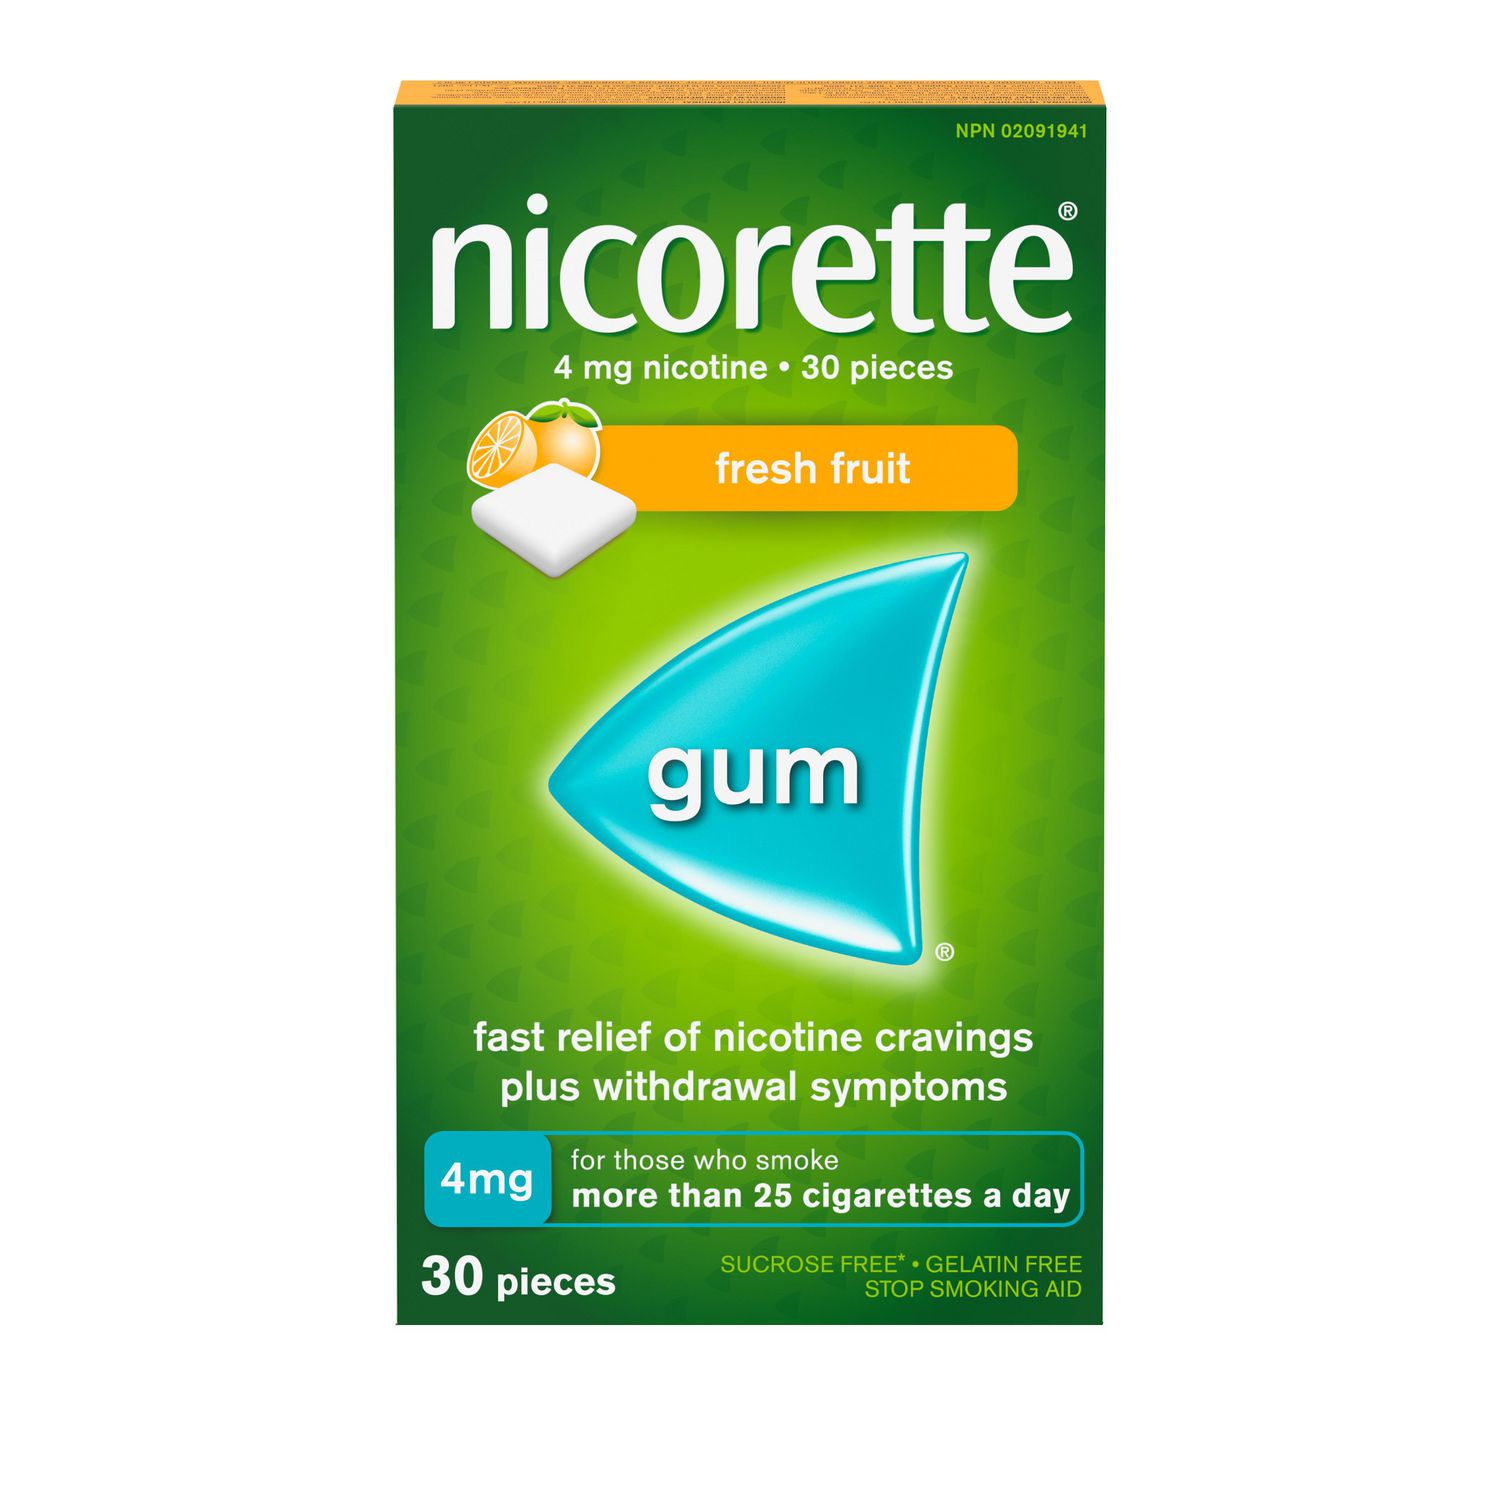 Nicorette Gum, Nicotine 4mg, Fresh Fruit Flavour, Quit Smoking Aid